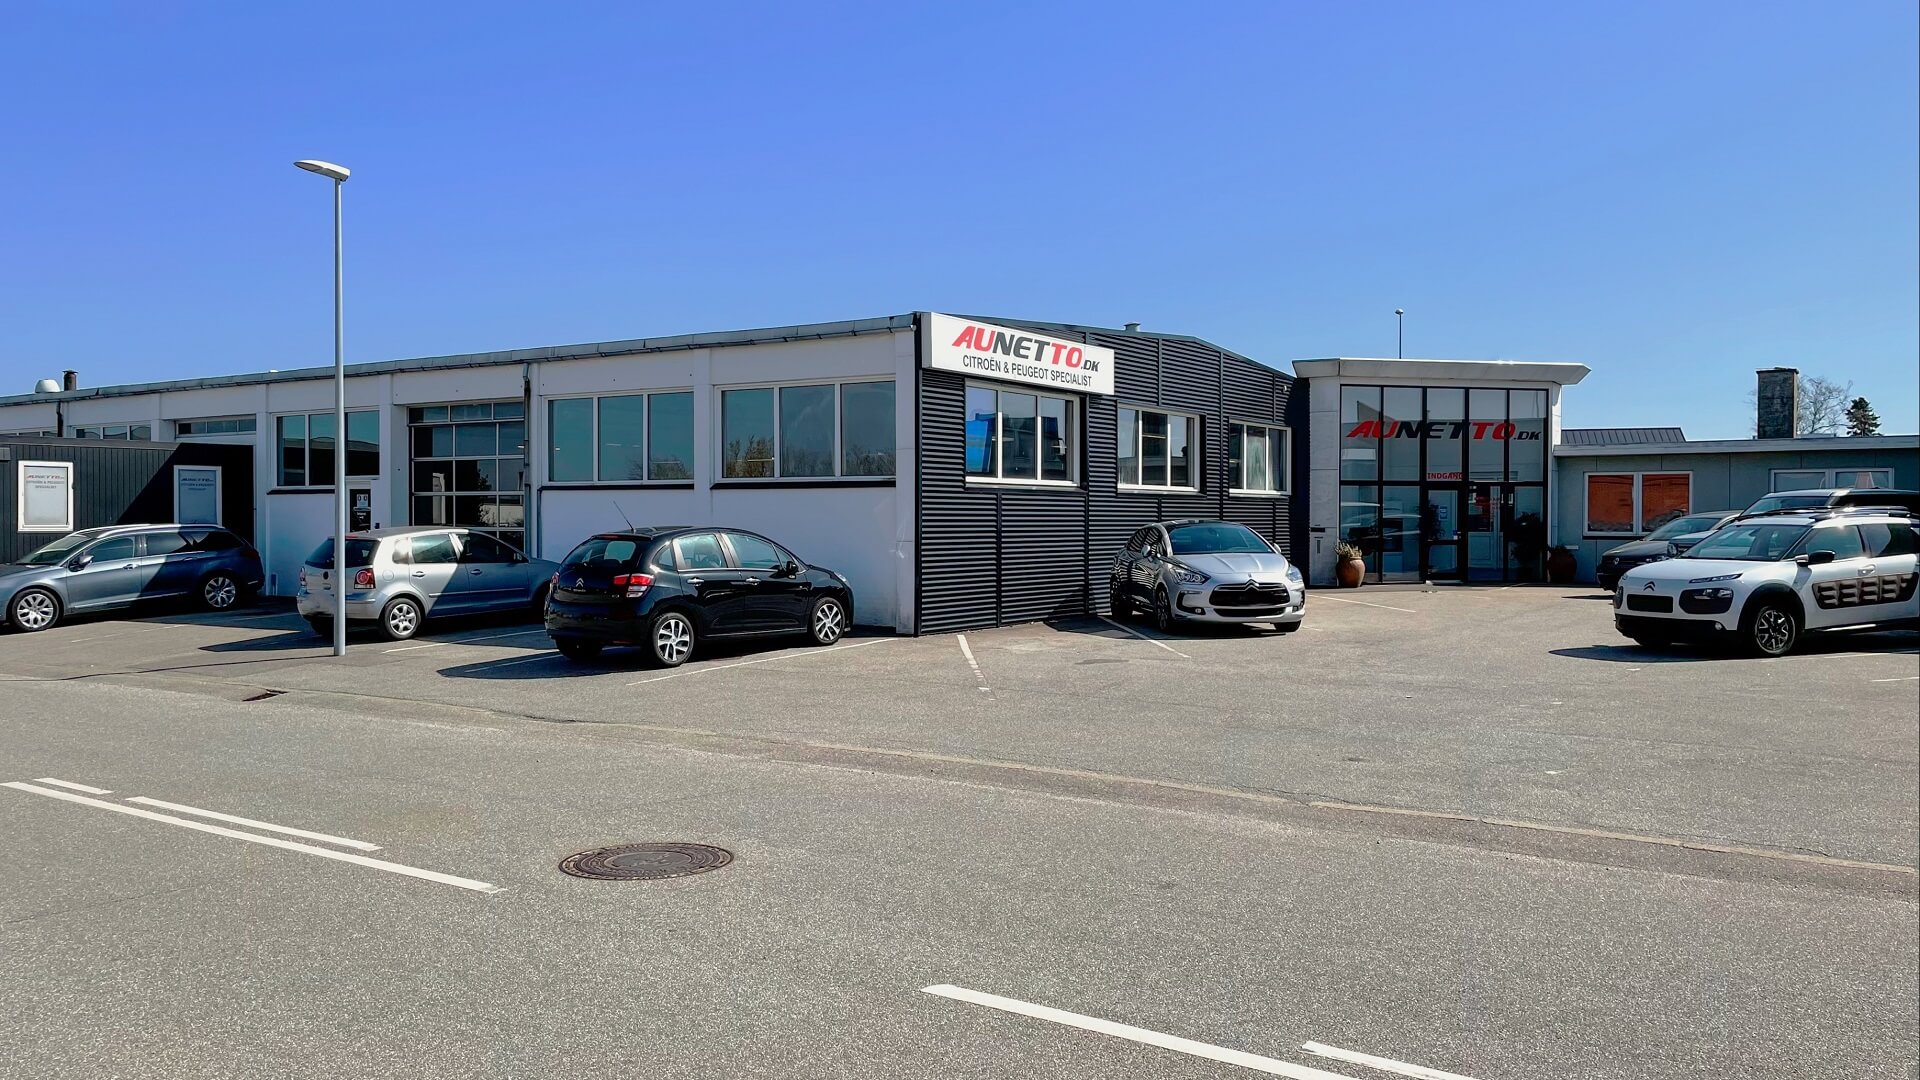 Autoværksted Aunetto i Herning - Citroen, Peugeot og Opel specialist